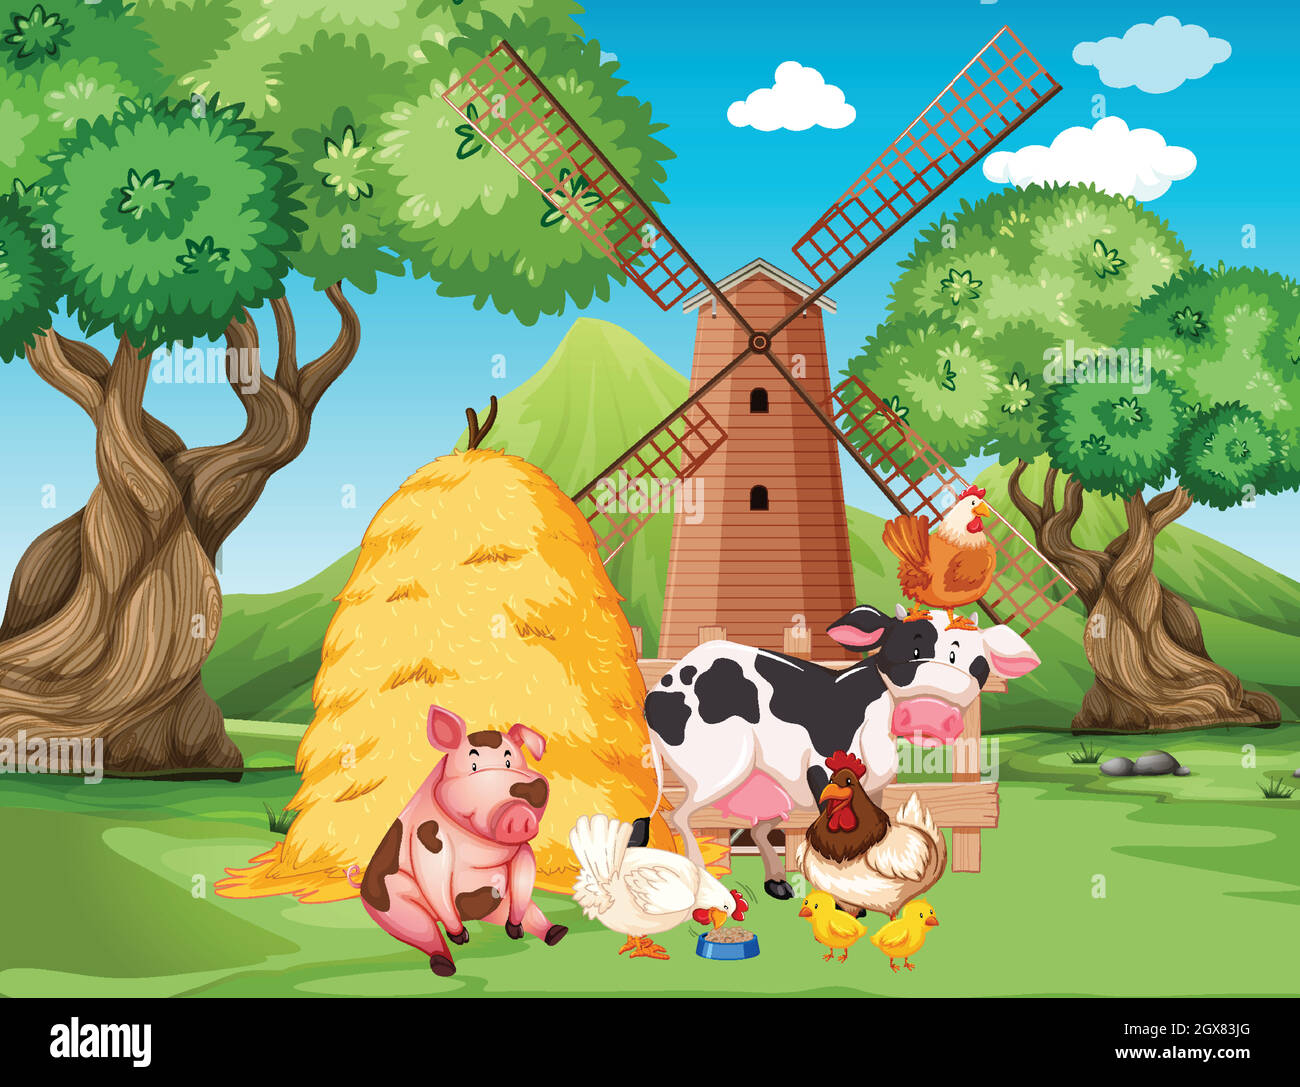 Farm Scene With Farm Animals And Windmill On The Farm Stock Vector